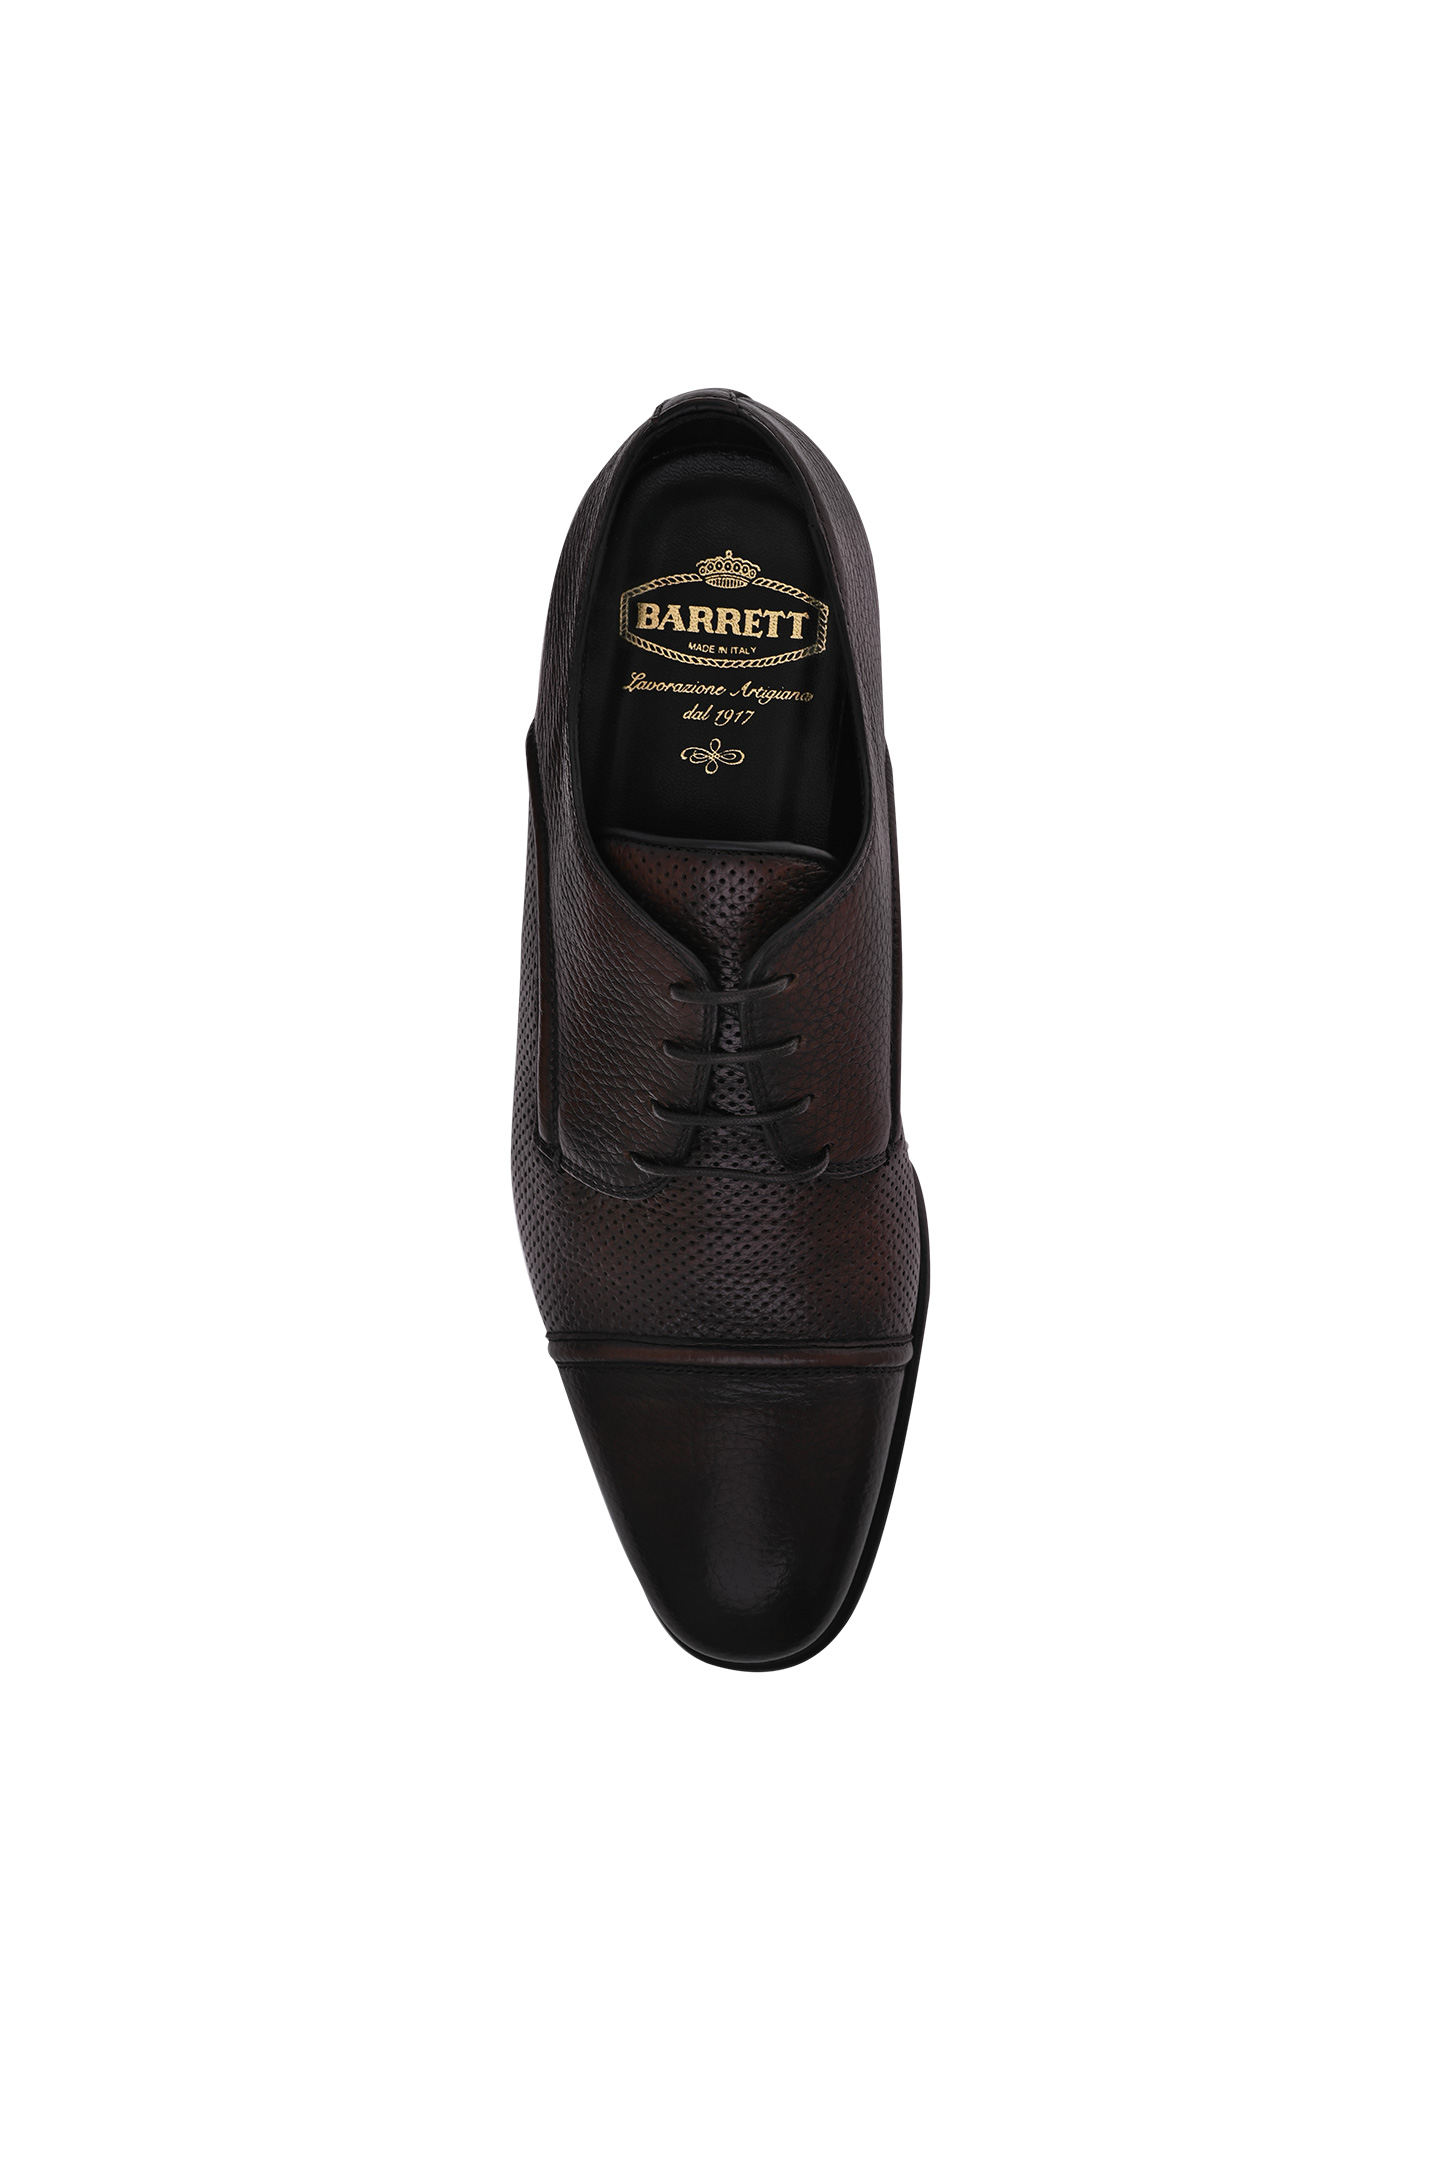 Туфли BARRETT 231U052, цвет: Коричневый, Мужской